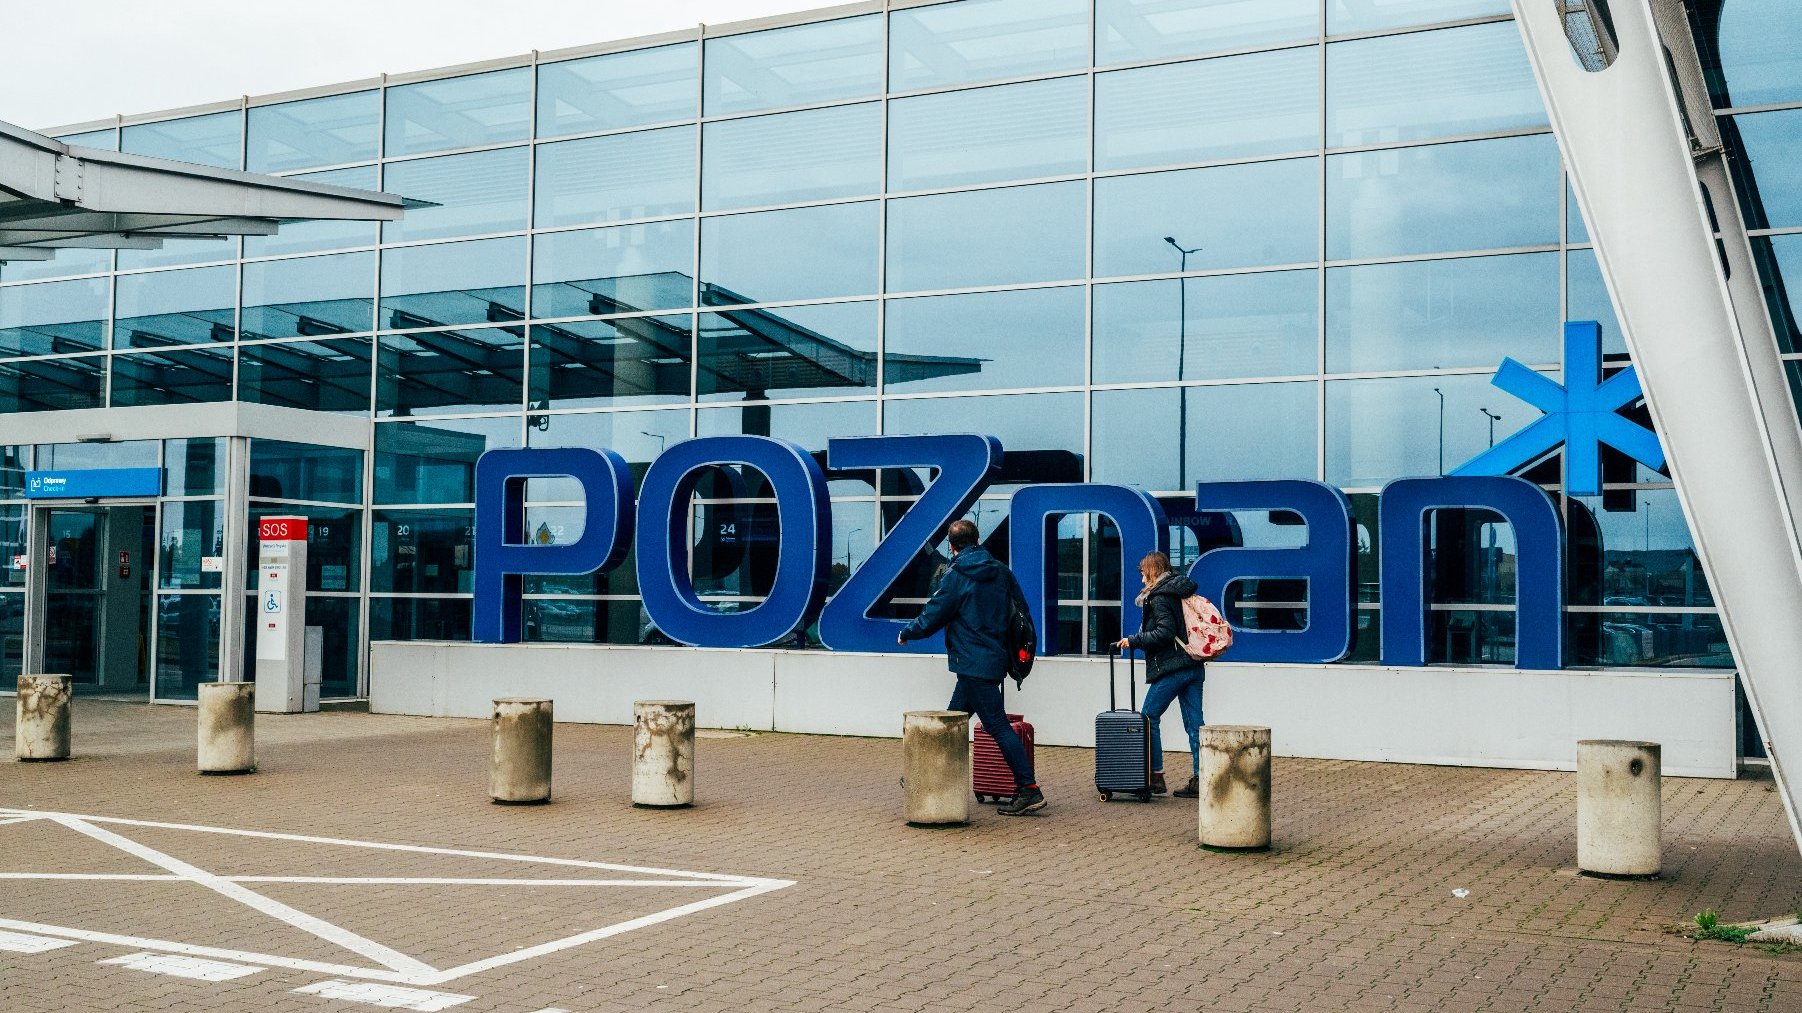 Wejście do lotniska Ławica z napisem Poznań